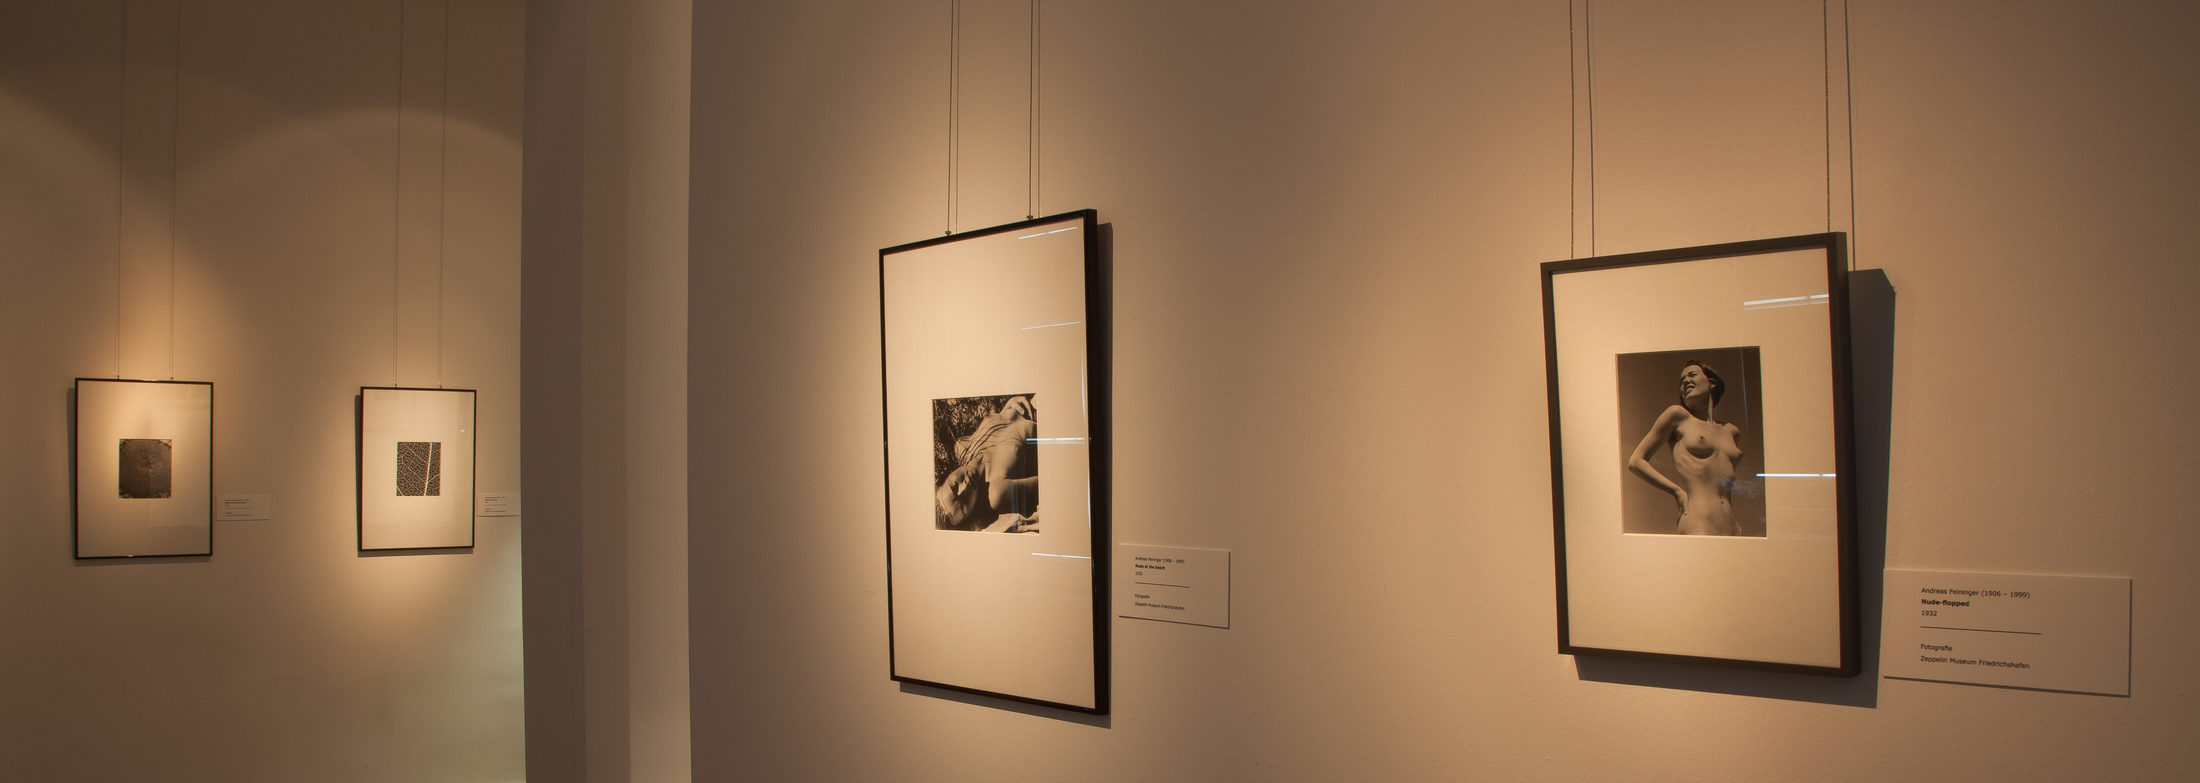 Blick in die Ausstellung zu Andreas Feininger (1)